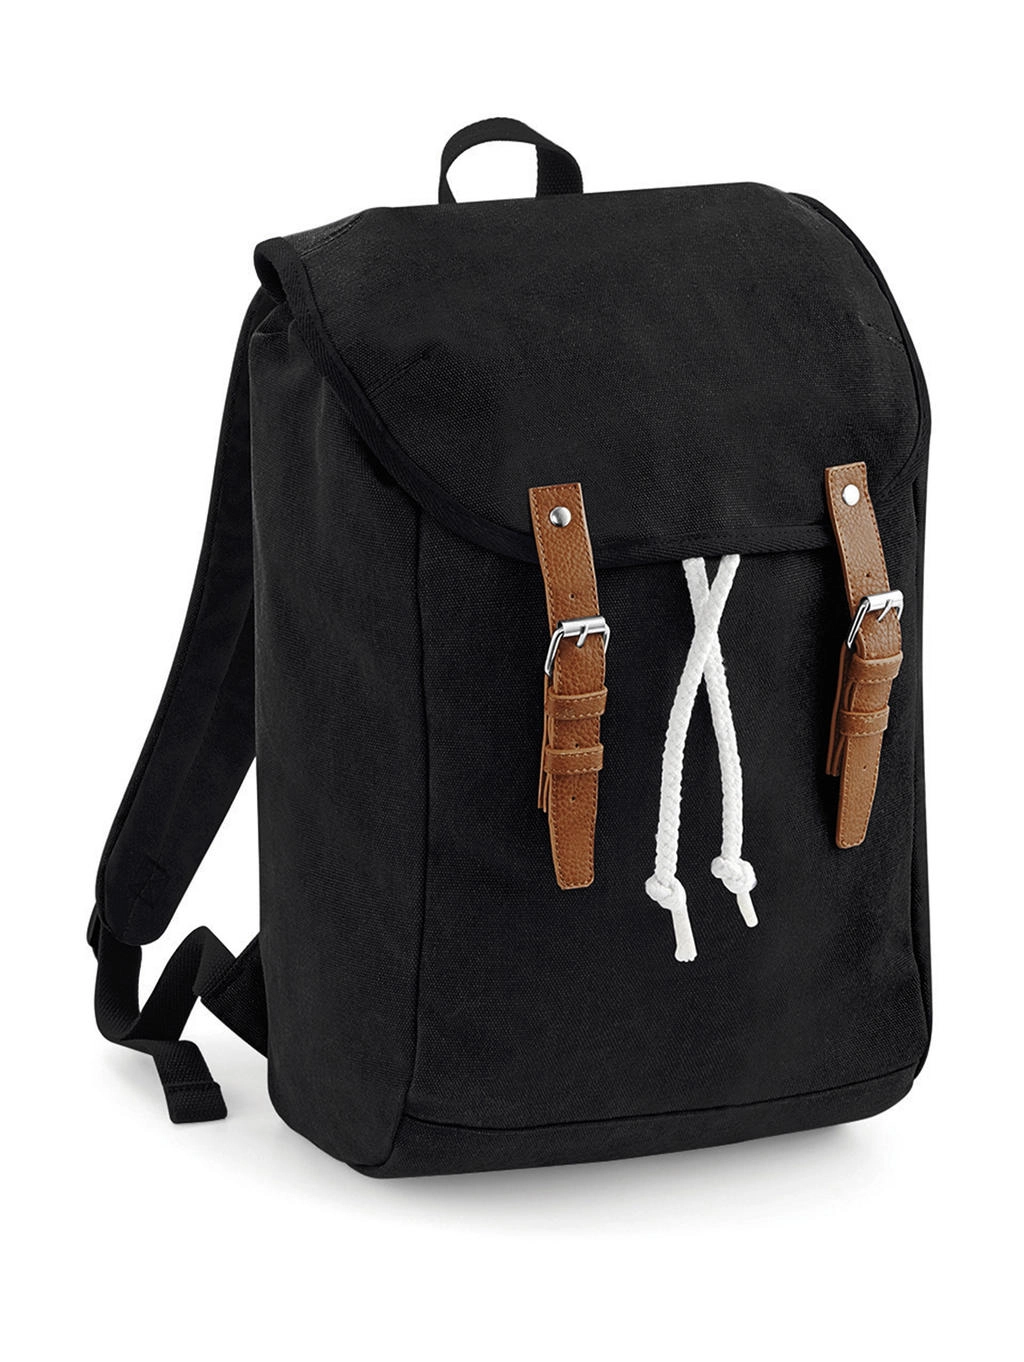 Vintage Backpack zum Besticken und Bedrucken in der Farbe Black mit Ihren Logo, Schriftzug oder Motiv.